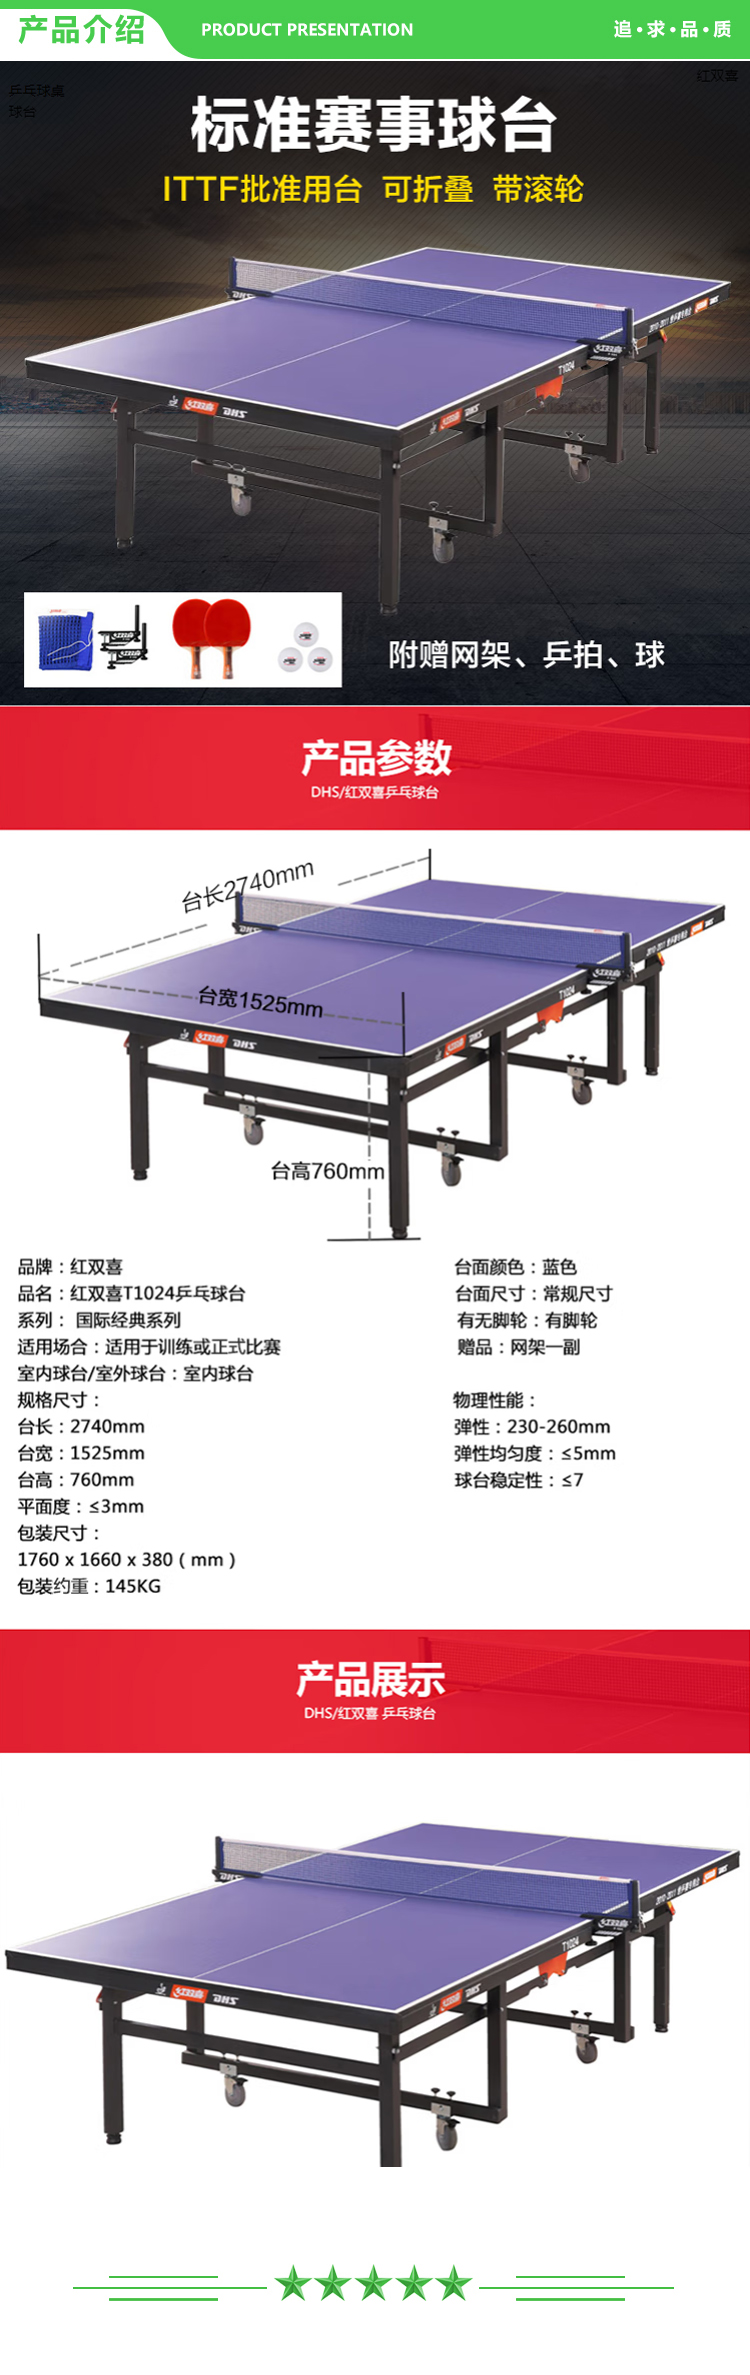 红双喜 DHS DXBC005-1(T1024) 乒乓球桌室内乒乓球台训练比赛用乒乓球案子 含网架-球拍-三星球 .jpg